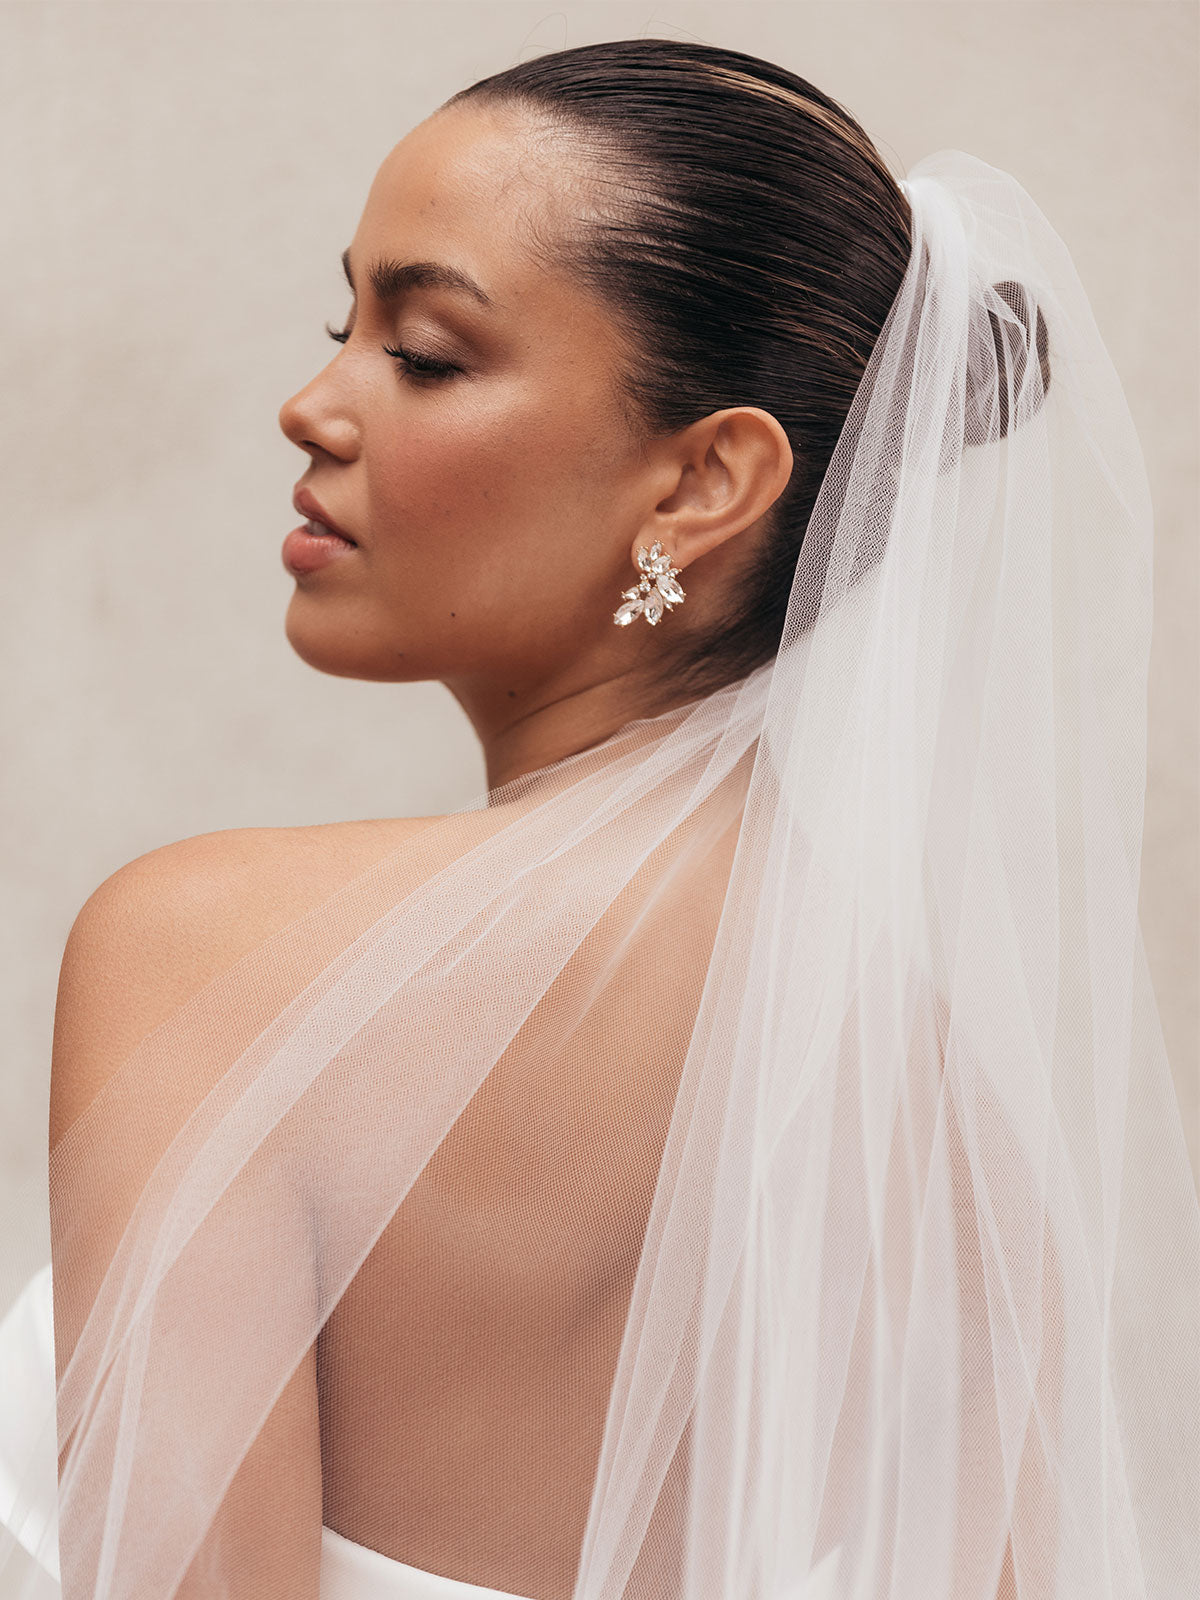 Pink Crystal Earrings Wedding | Pink Crystal Bridal Earrings | Gold Earring  Pink Stone - Dangle Earrings - Aliexpress